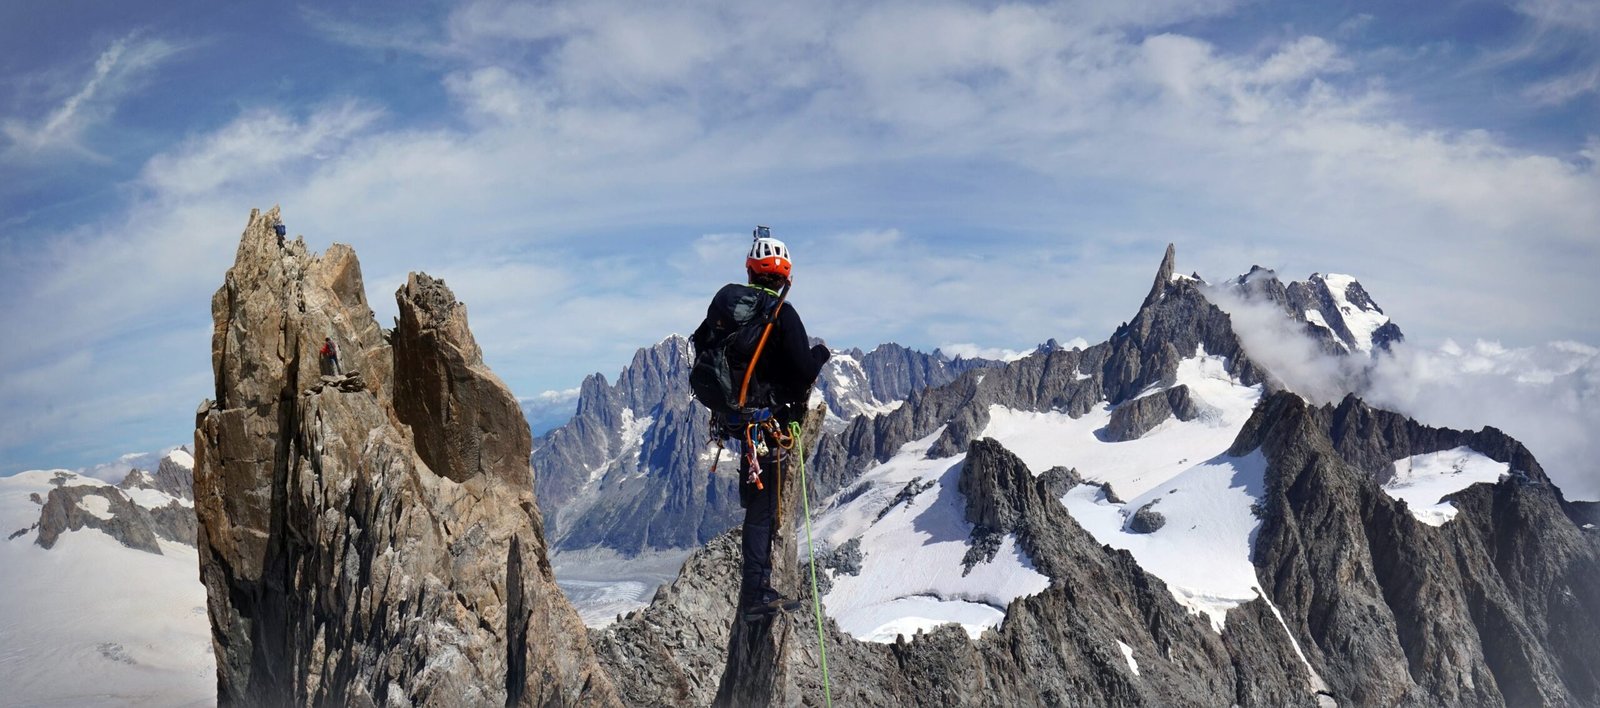 Alpinisme traversée aiguille d'Entrêves alpinisme guide chamonix